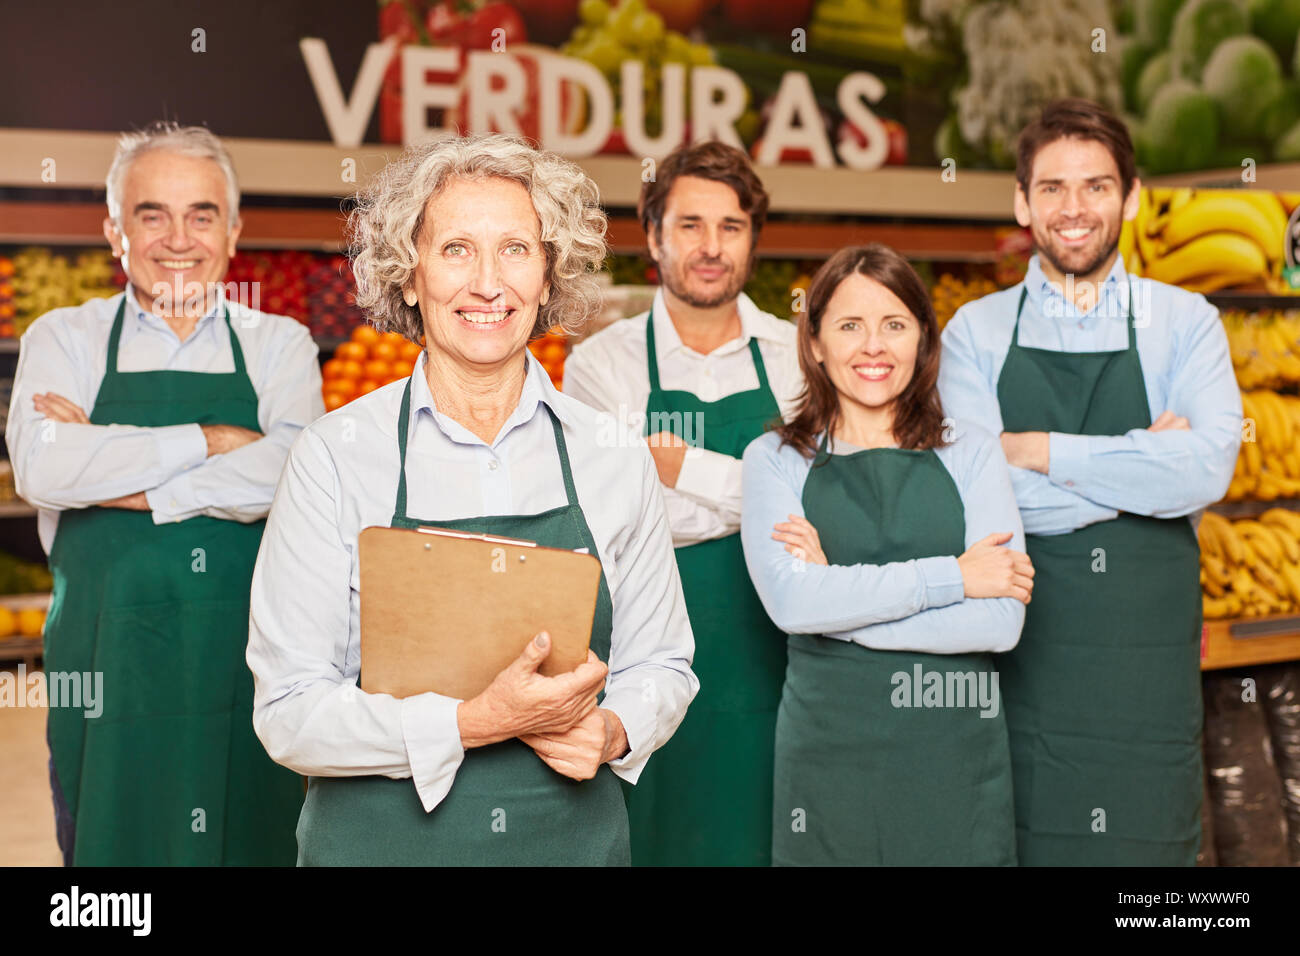 Glückliche Gruppe der Verkäufer im Supermarkt mit Market Manager und Auszubildende Stockfoto